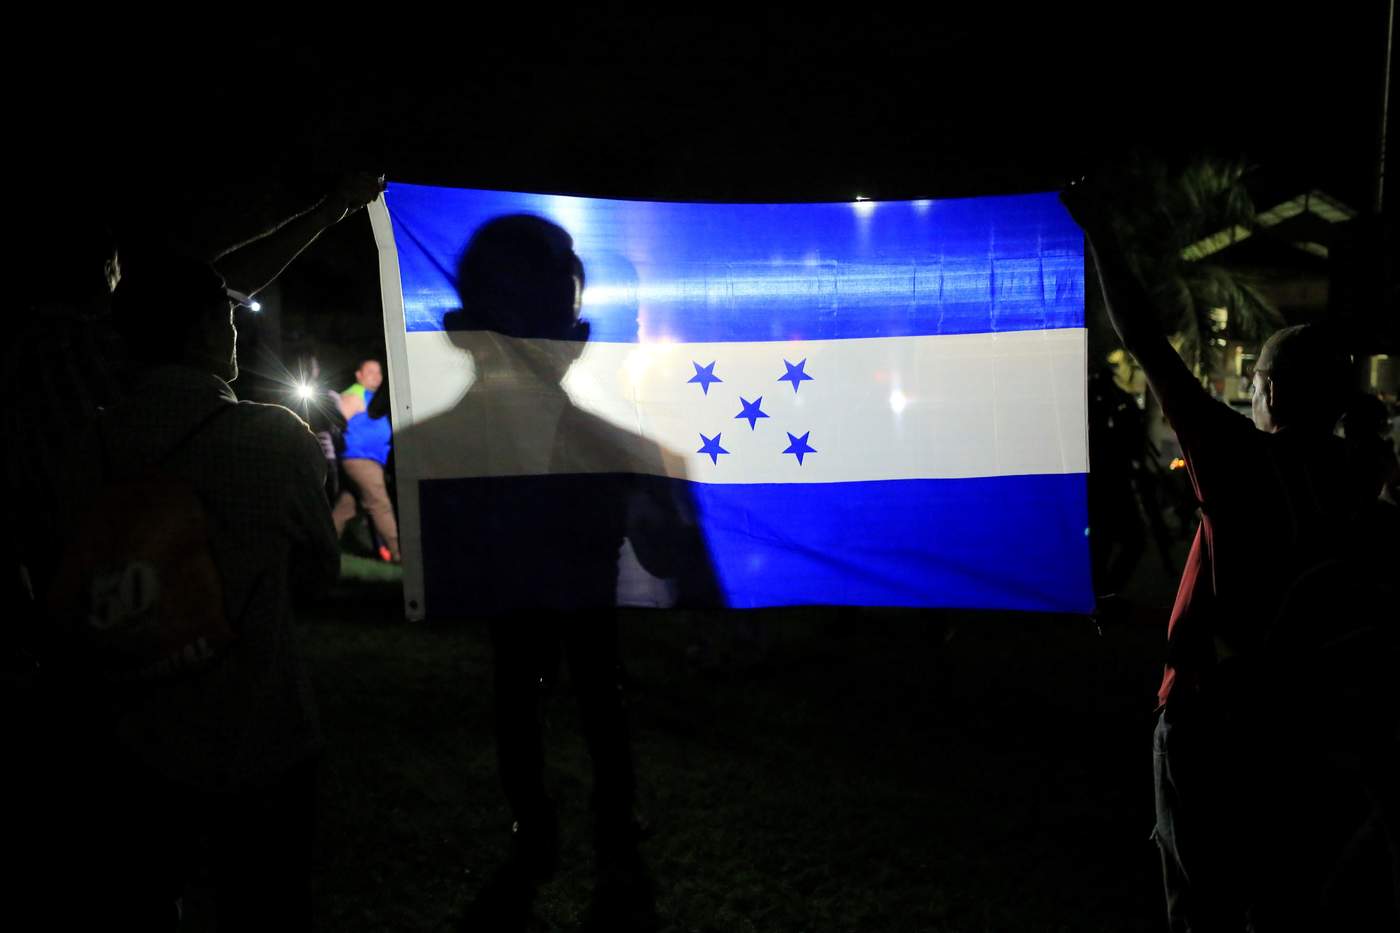 El Gobierno mexicano anunció hoy que respetará los 'derechos humanos' y la 'integridad' de las personas que integran la nueva caravana migrante que partió este lunes de Honduras con el objetivo de alcanzar Estados Unidos pasando por Guatemala y México. (EFE)